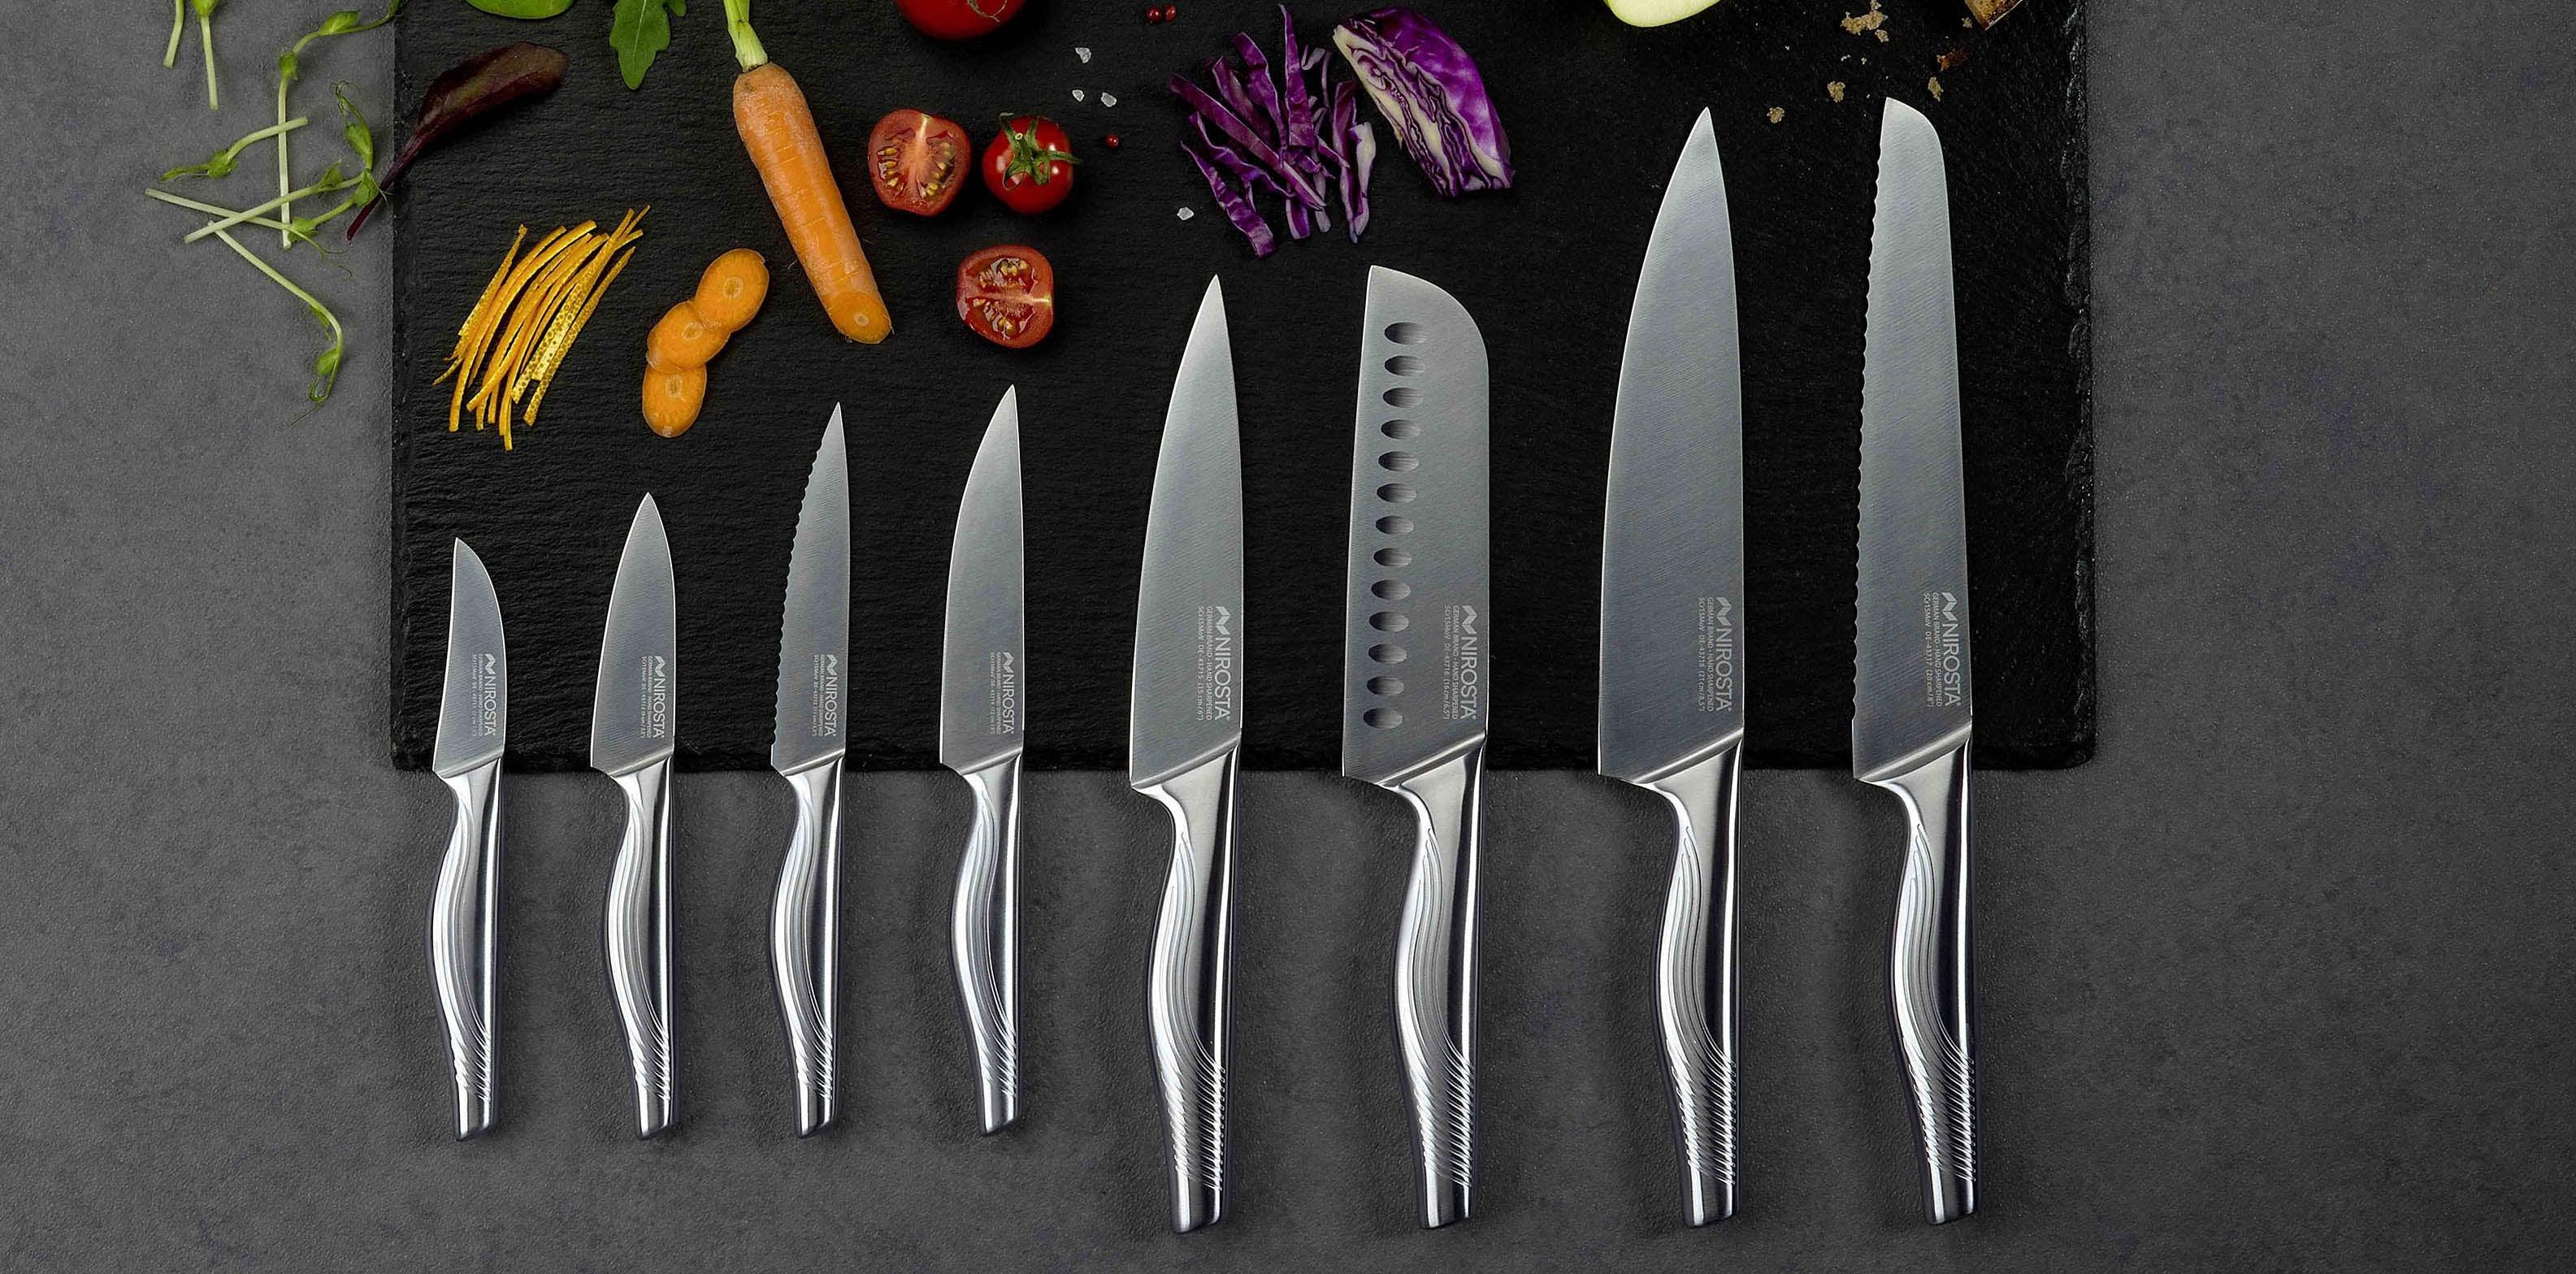 Lot 3 couteaux céramique + épluche-légumes – CUISINE AU TOP